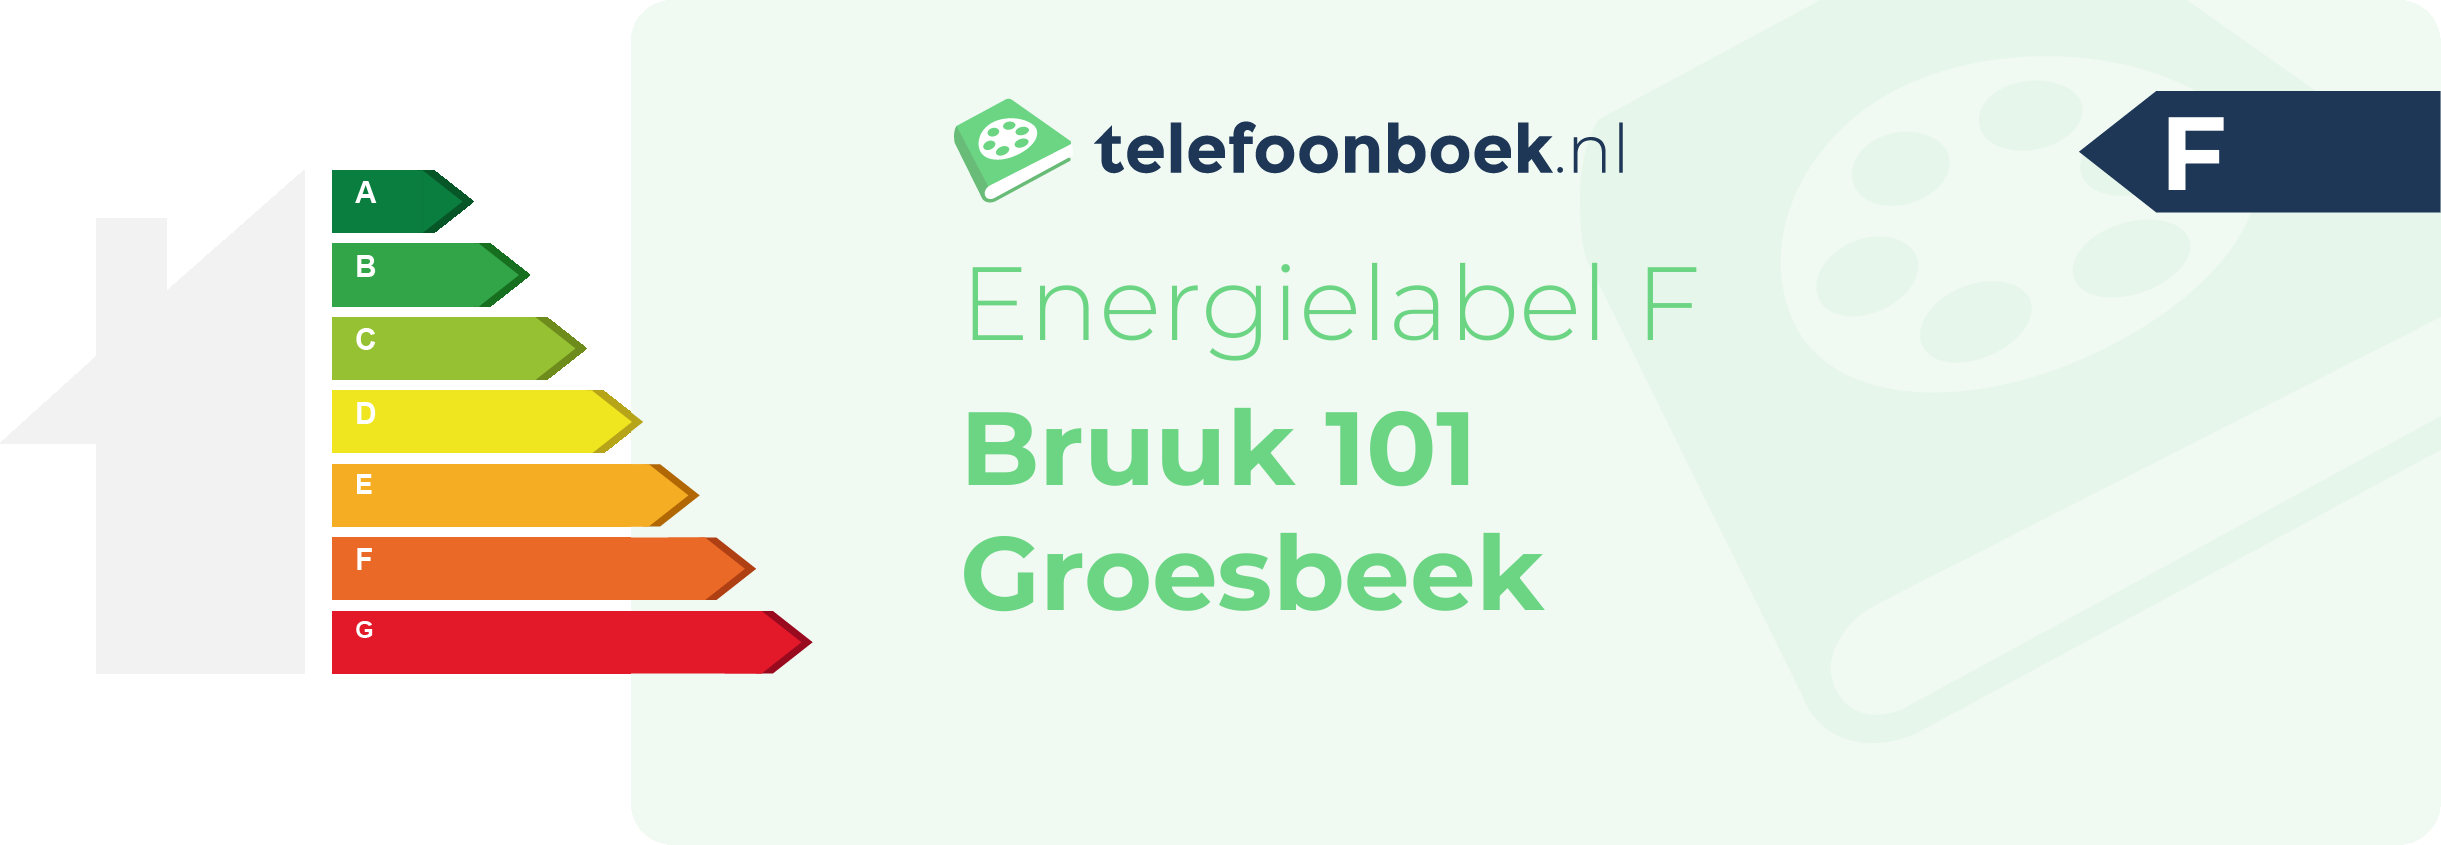 Energielabel Bruuk 101 Groesbeek